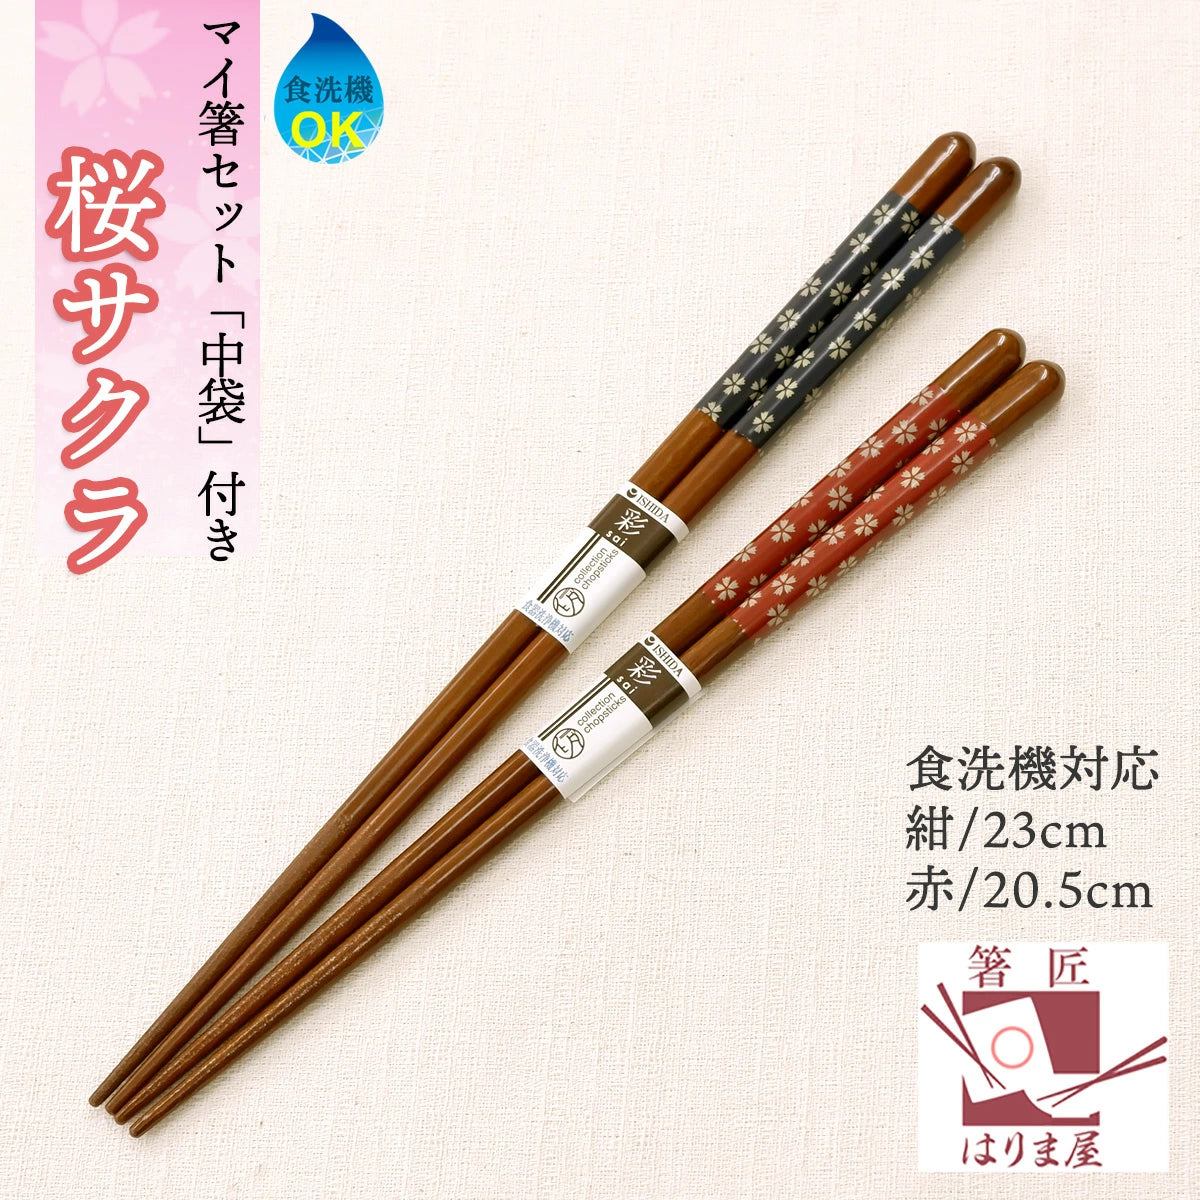 マイ箸 桜 さくら 箸袋 セット 赤 or 紺